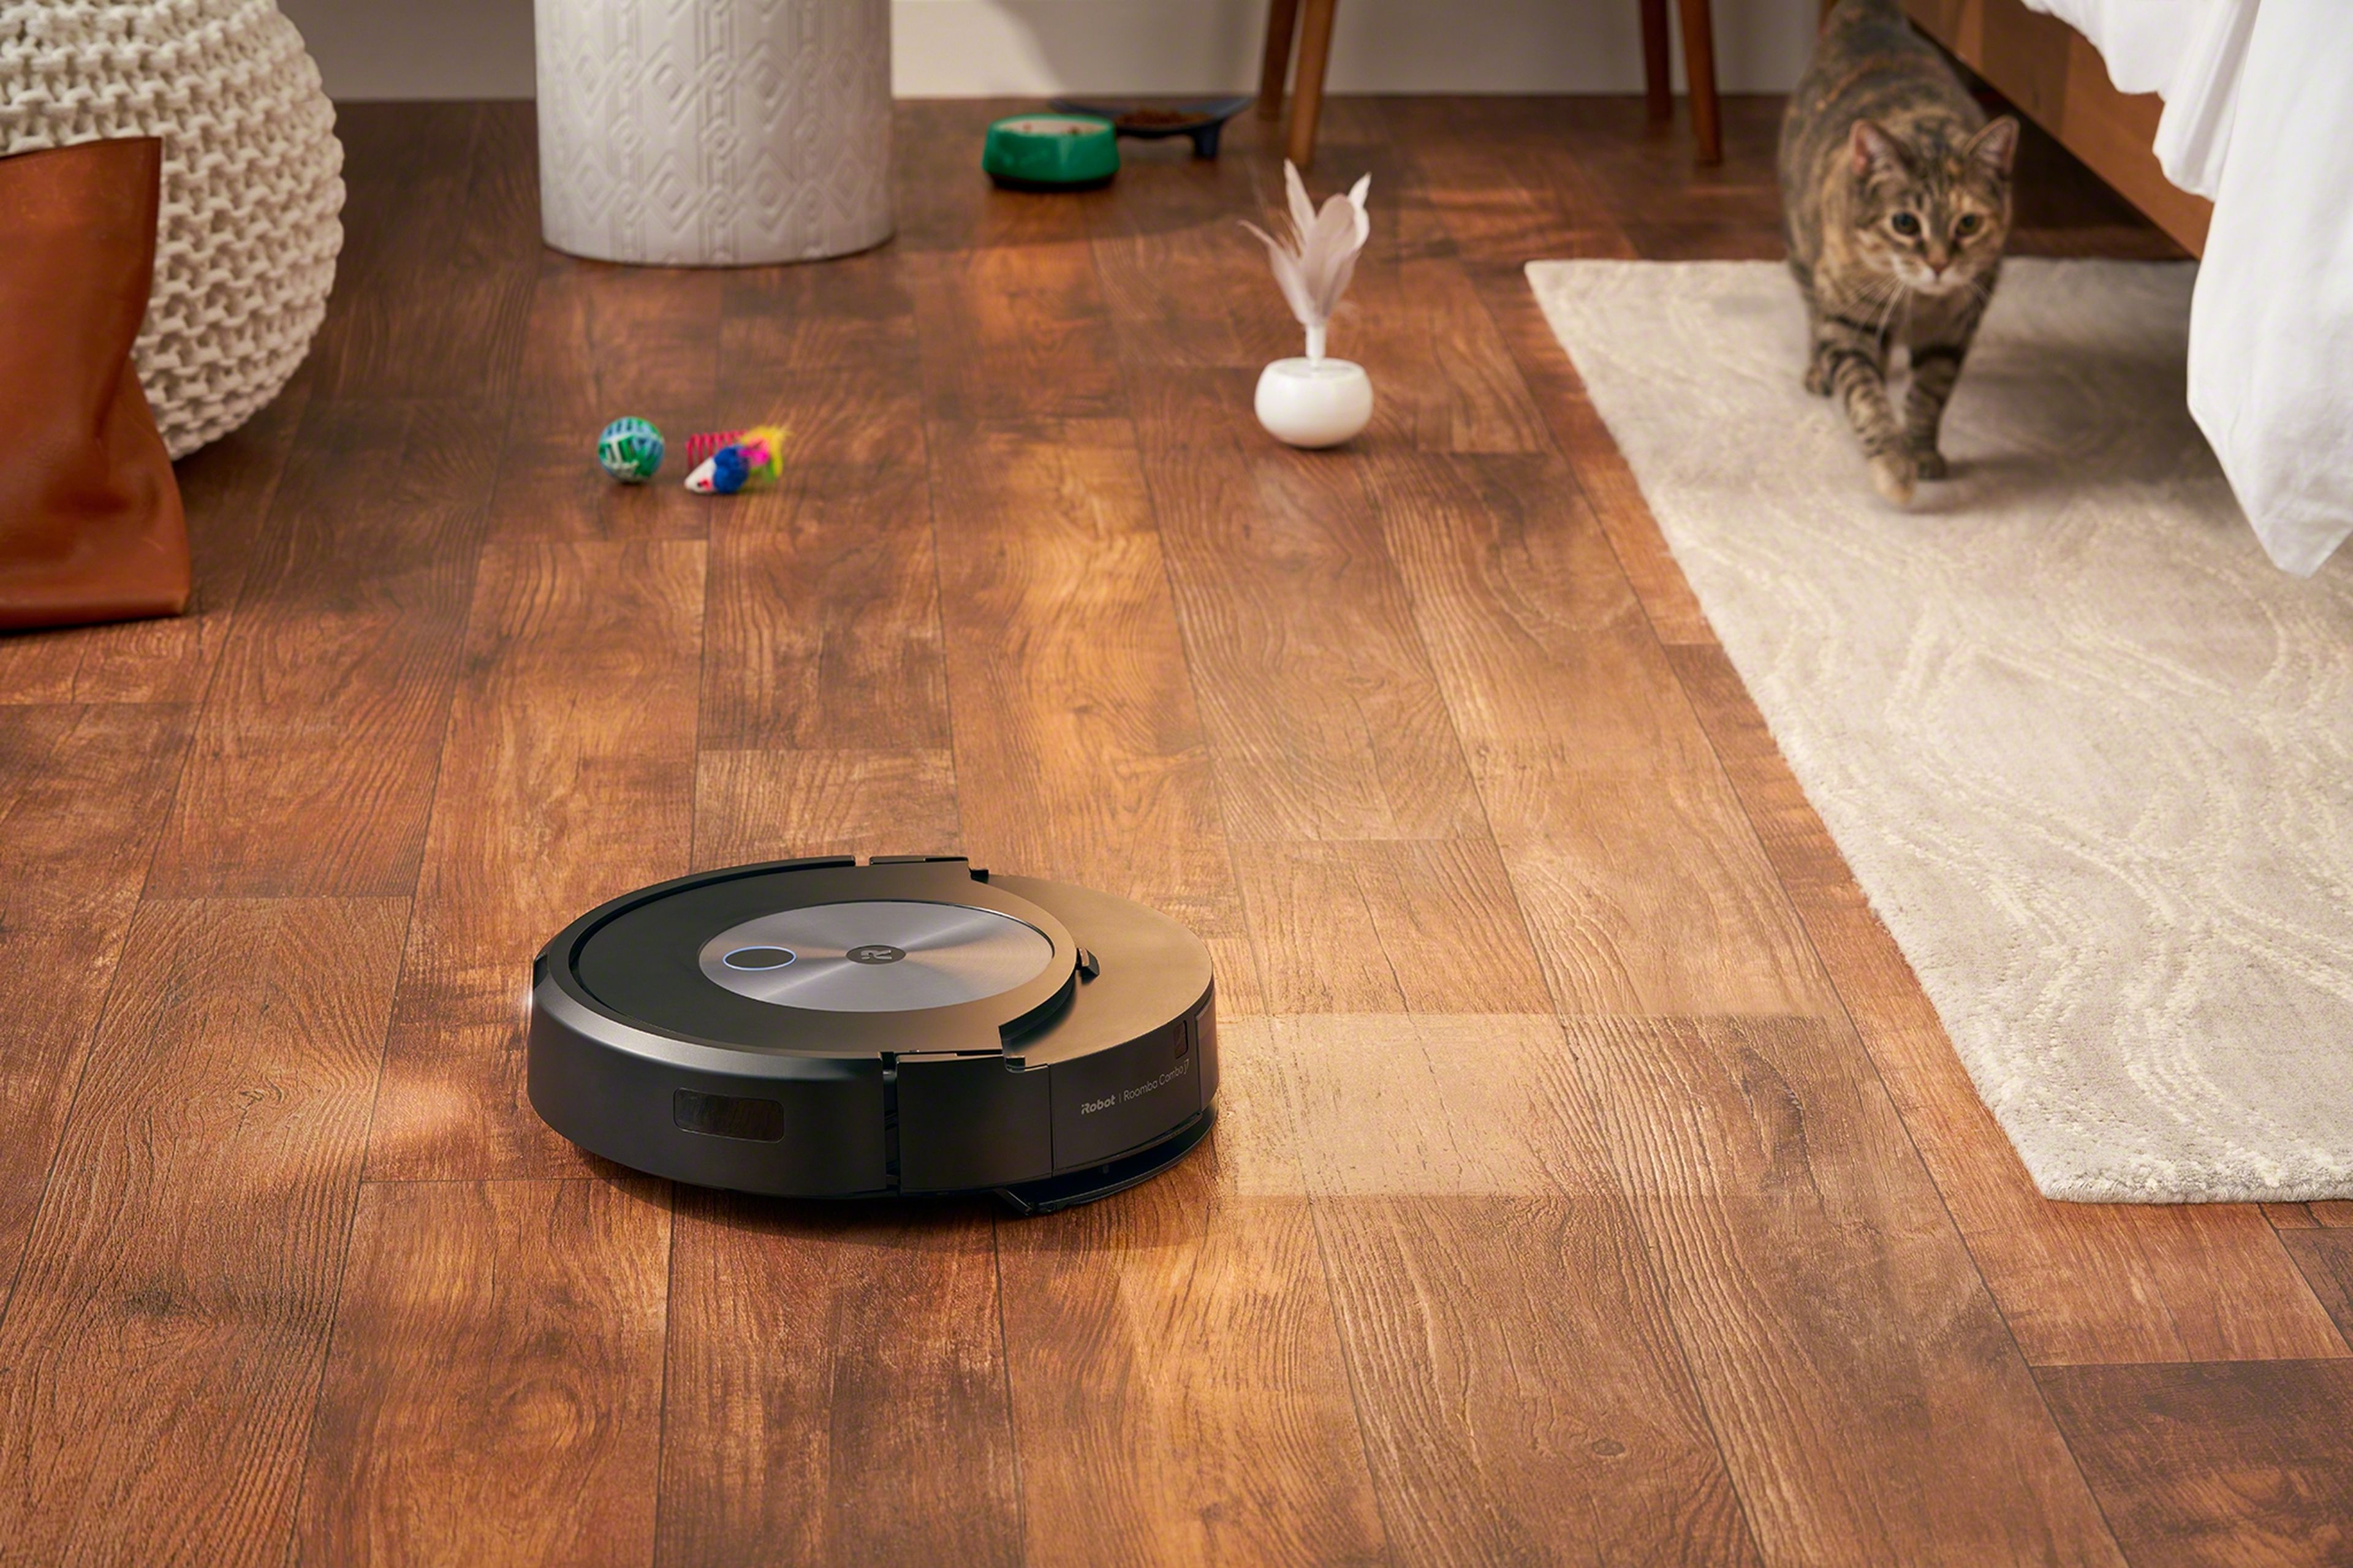 industria Fontanero piel Roomba Combo j7+, el robot que aspira y friega a la vez llegará en octubre  | Business Insider España